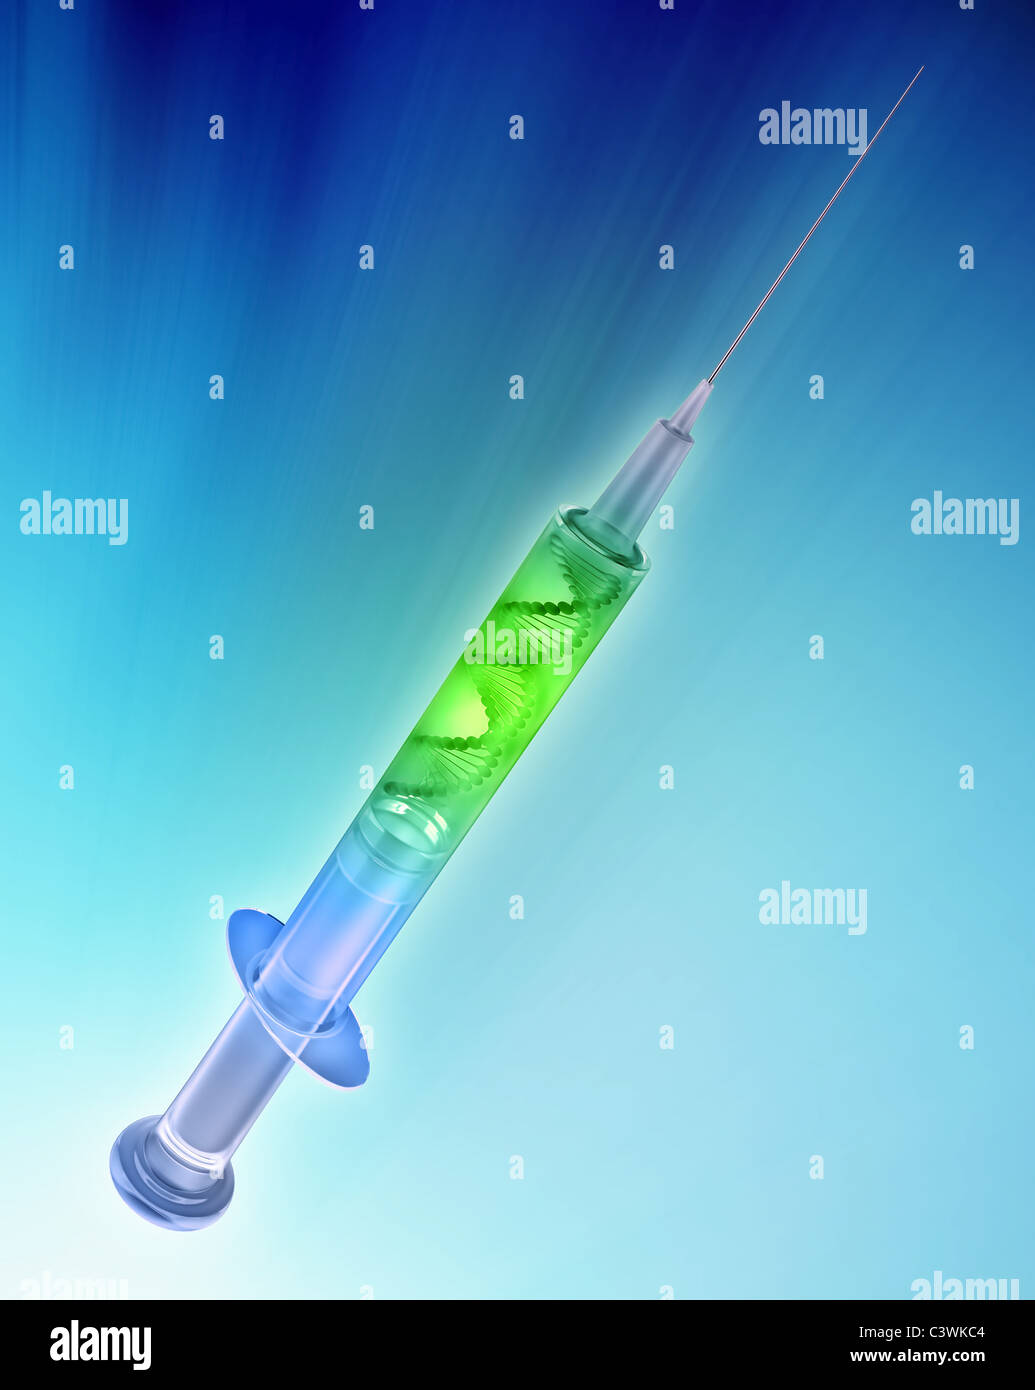 Spritze mit einem DNA-Strang - gen Therapiekonzept Stockfoto